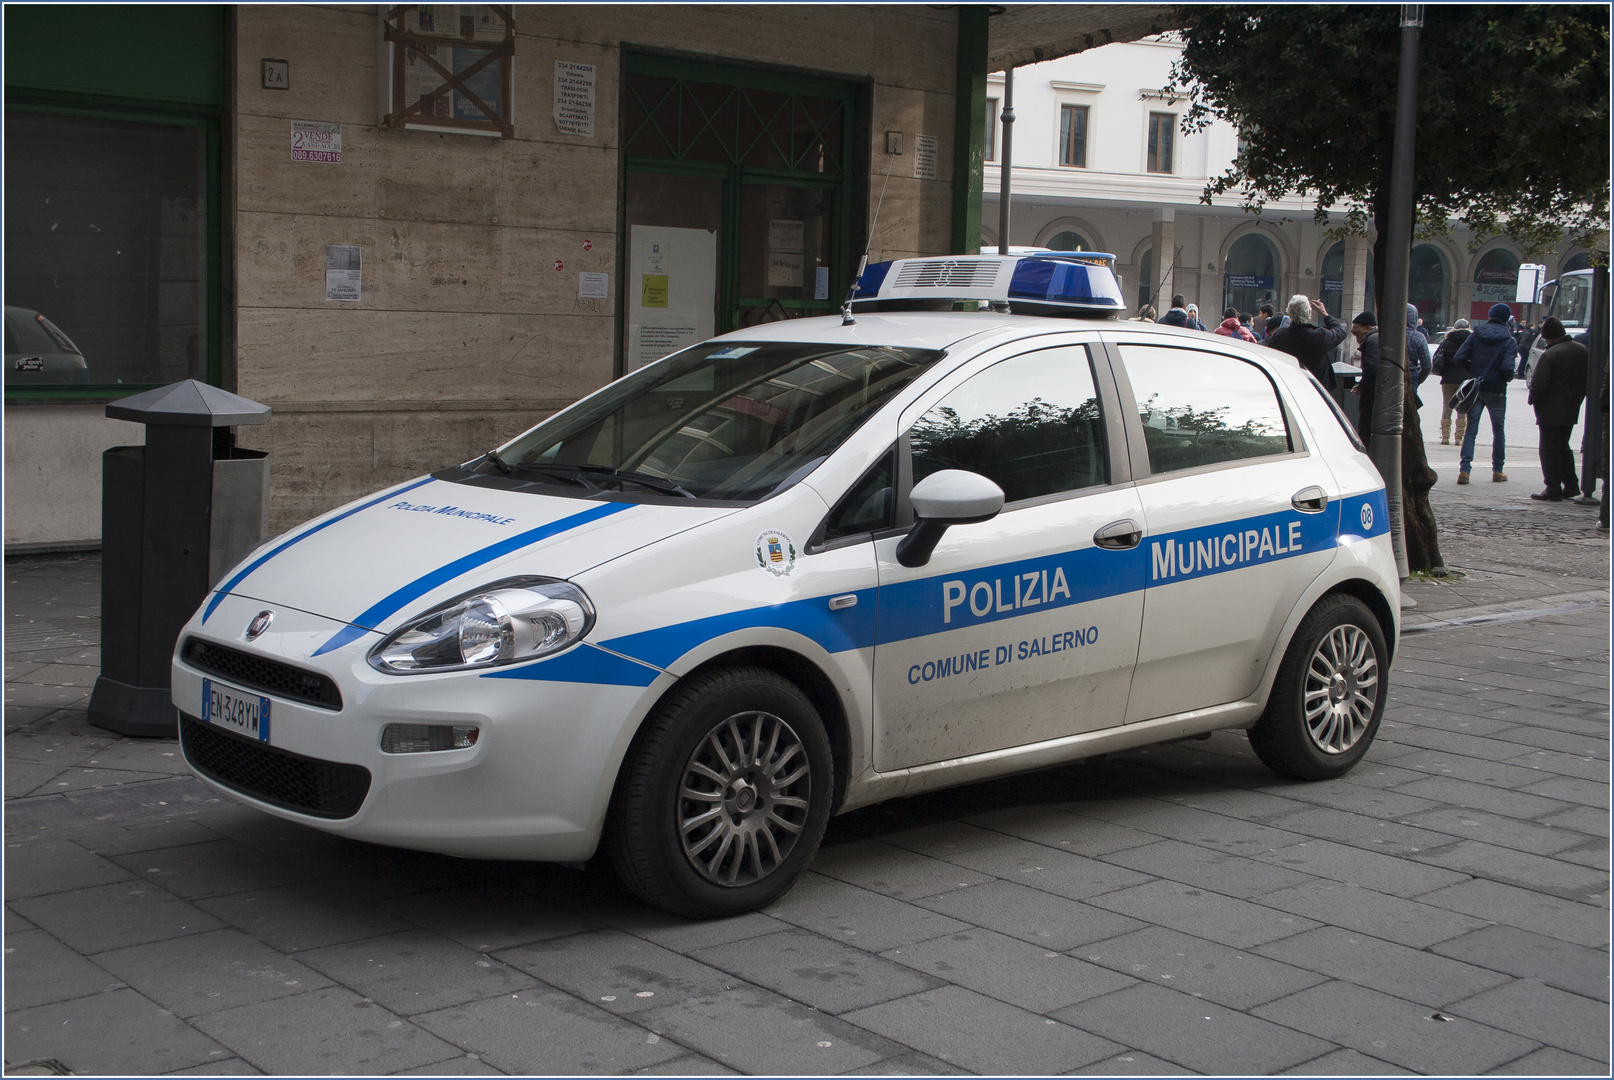 Polizei Italien #1